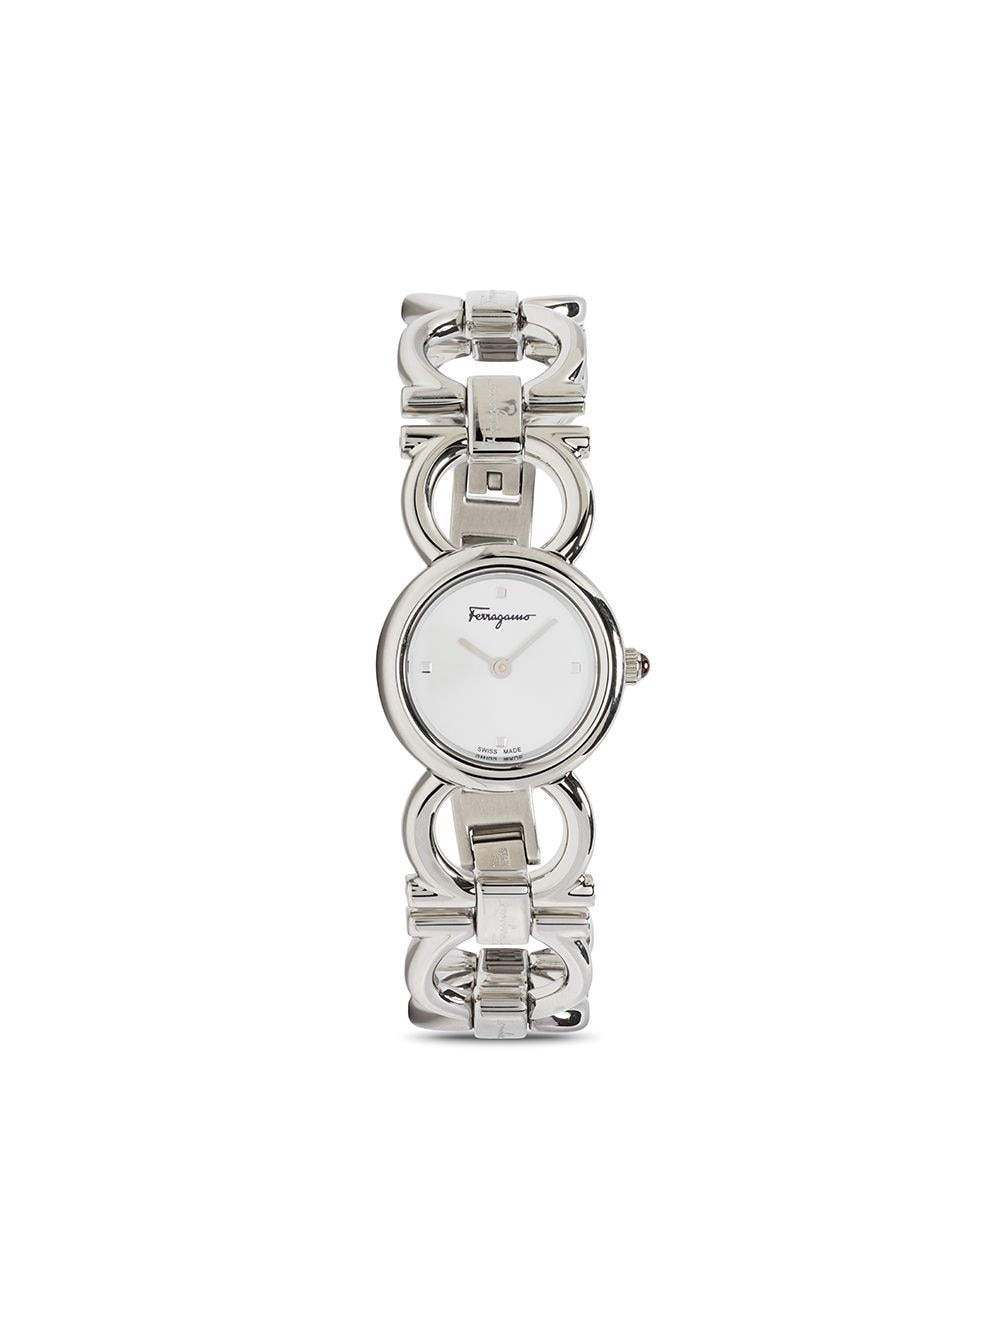 фото Salvatore ferragamo watches кварцевые наручные часы 22 мм с декором gancini